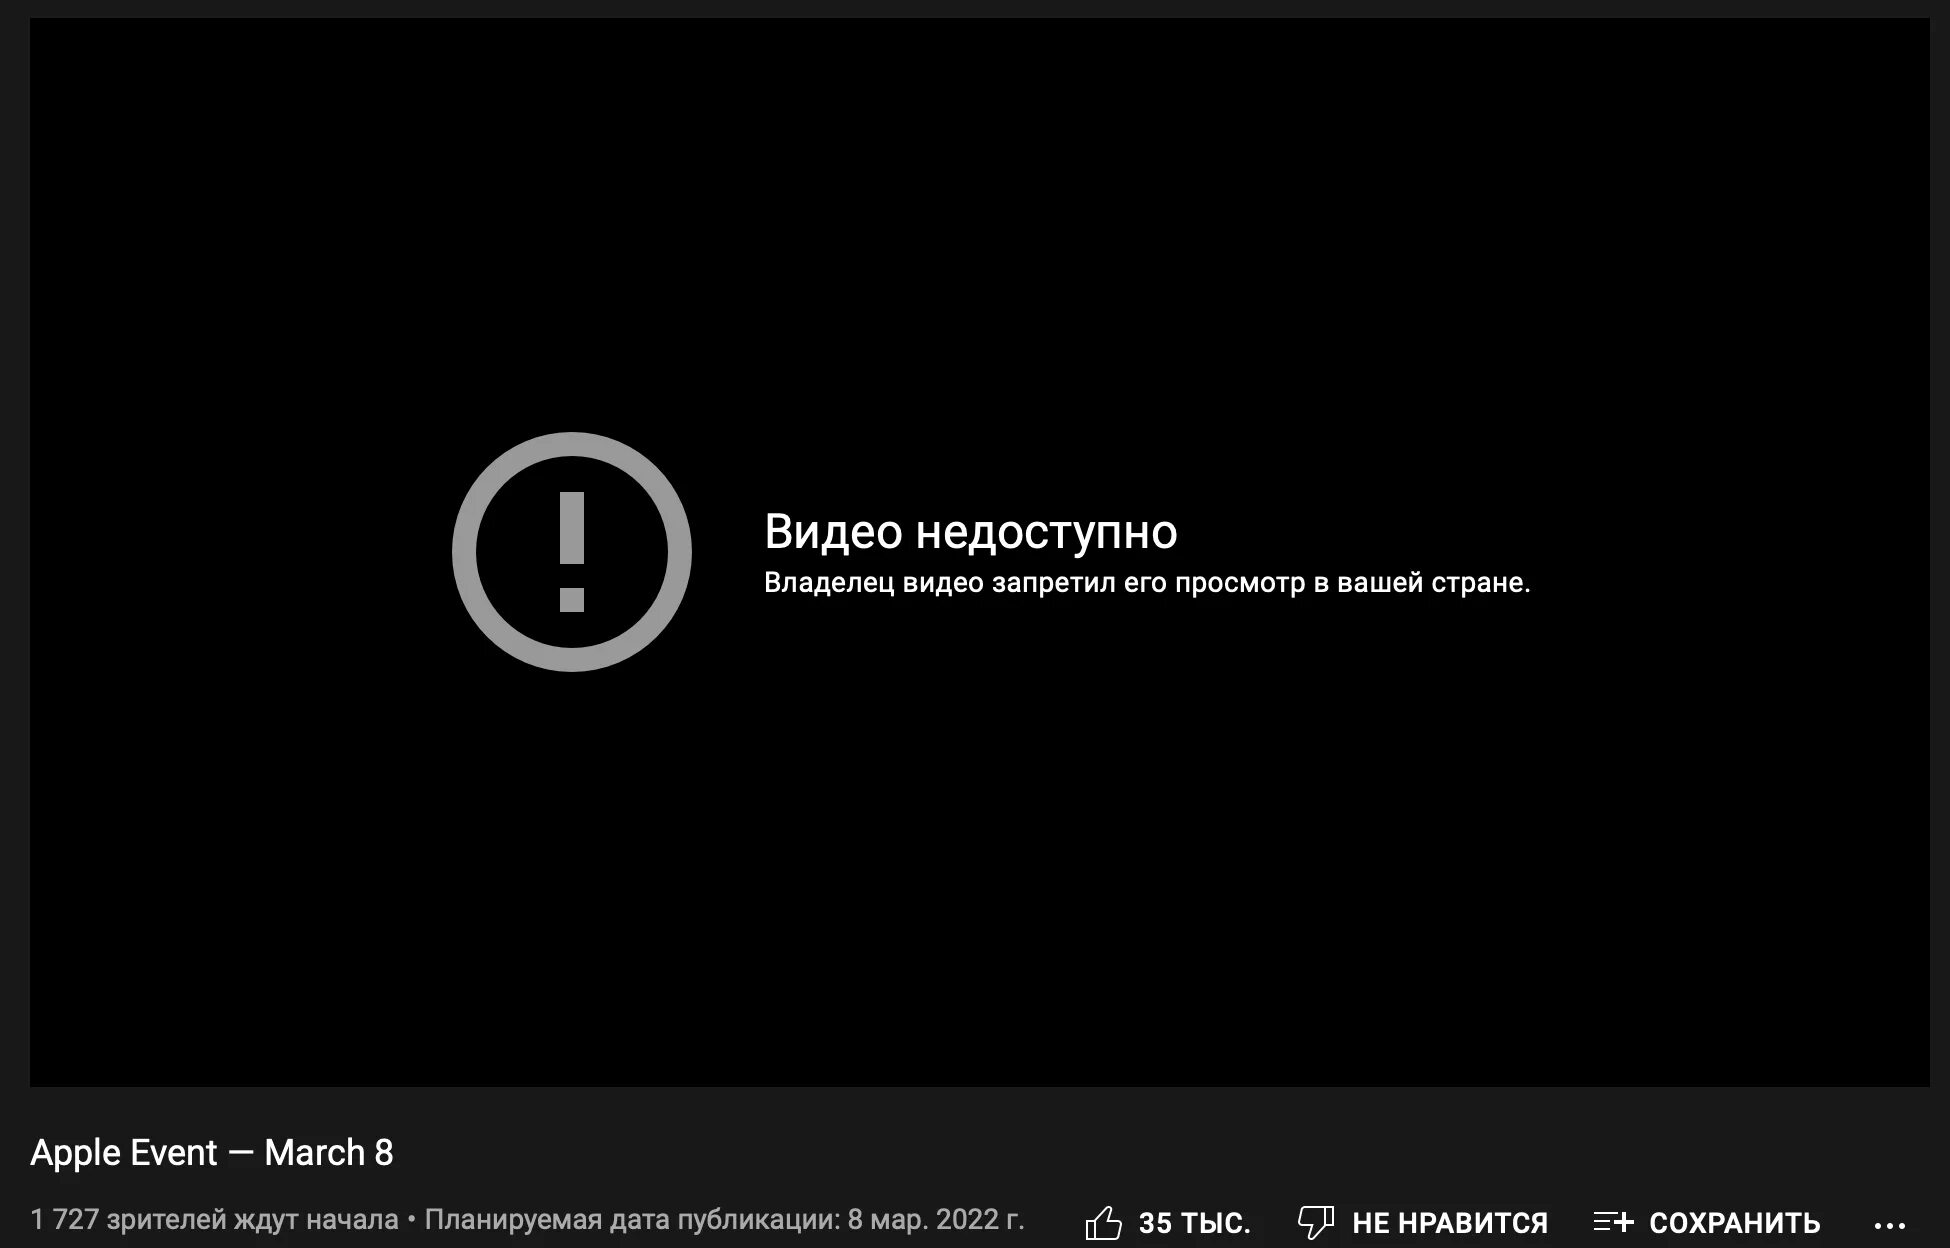 Доступен в вашей. Отключение ютуба в России. Прямой эфир презентации Apple. Apple заблокируют в России. Владелец видео запретил его просмотр в вашей стране. Youtube.